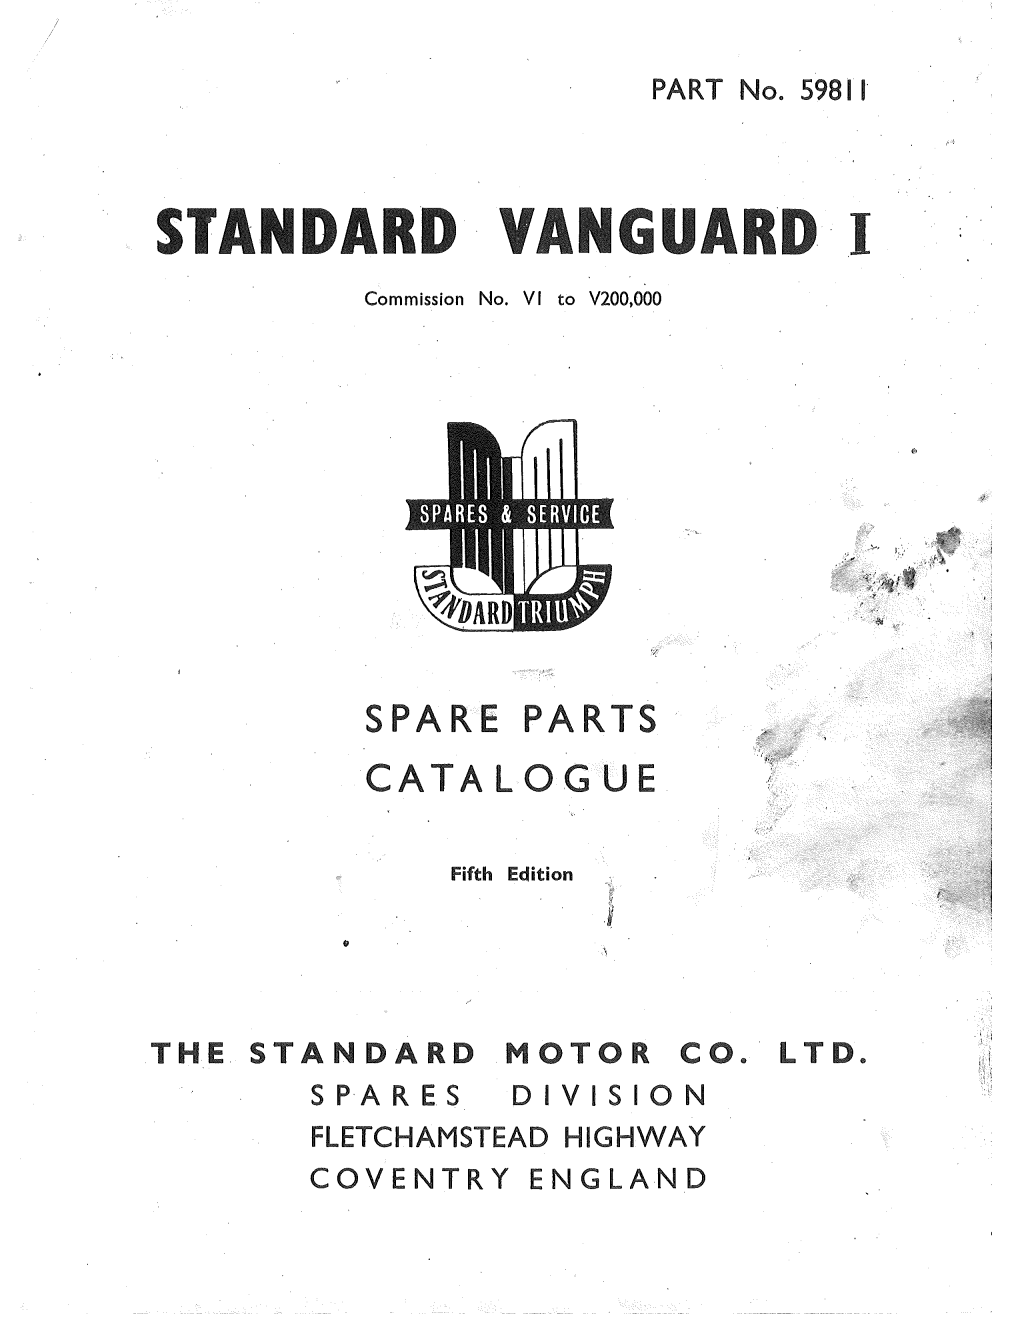 Standard Vanguard I Spare Parts Catalogue